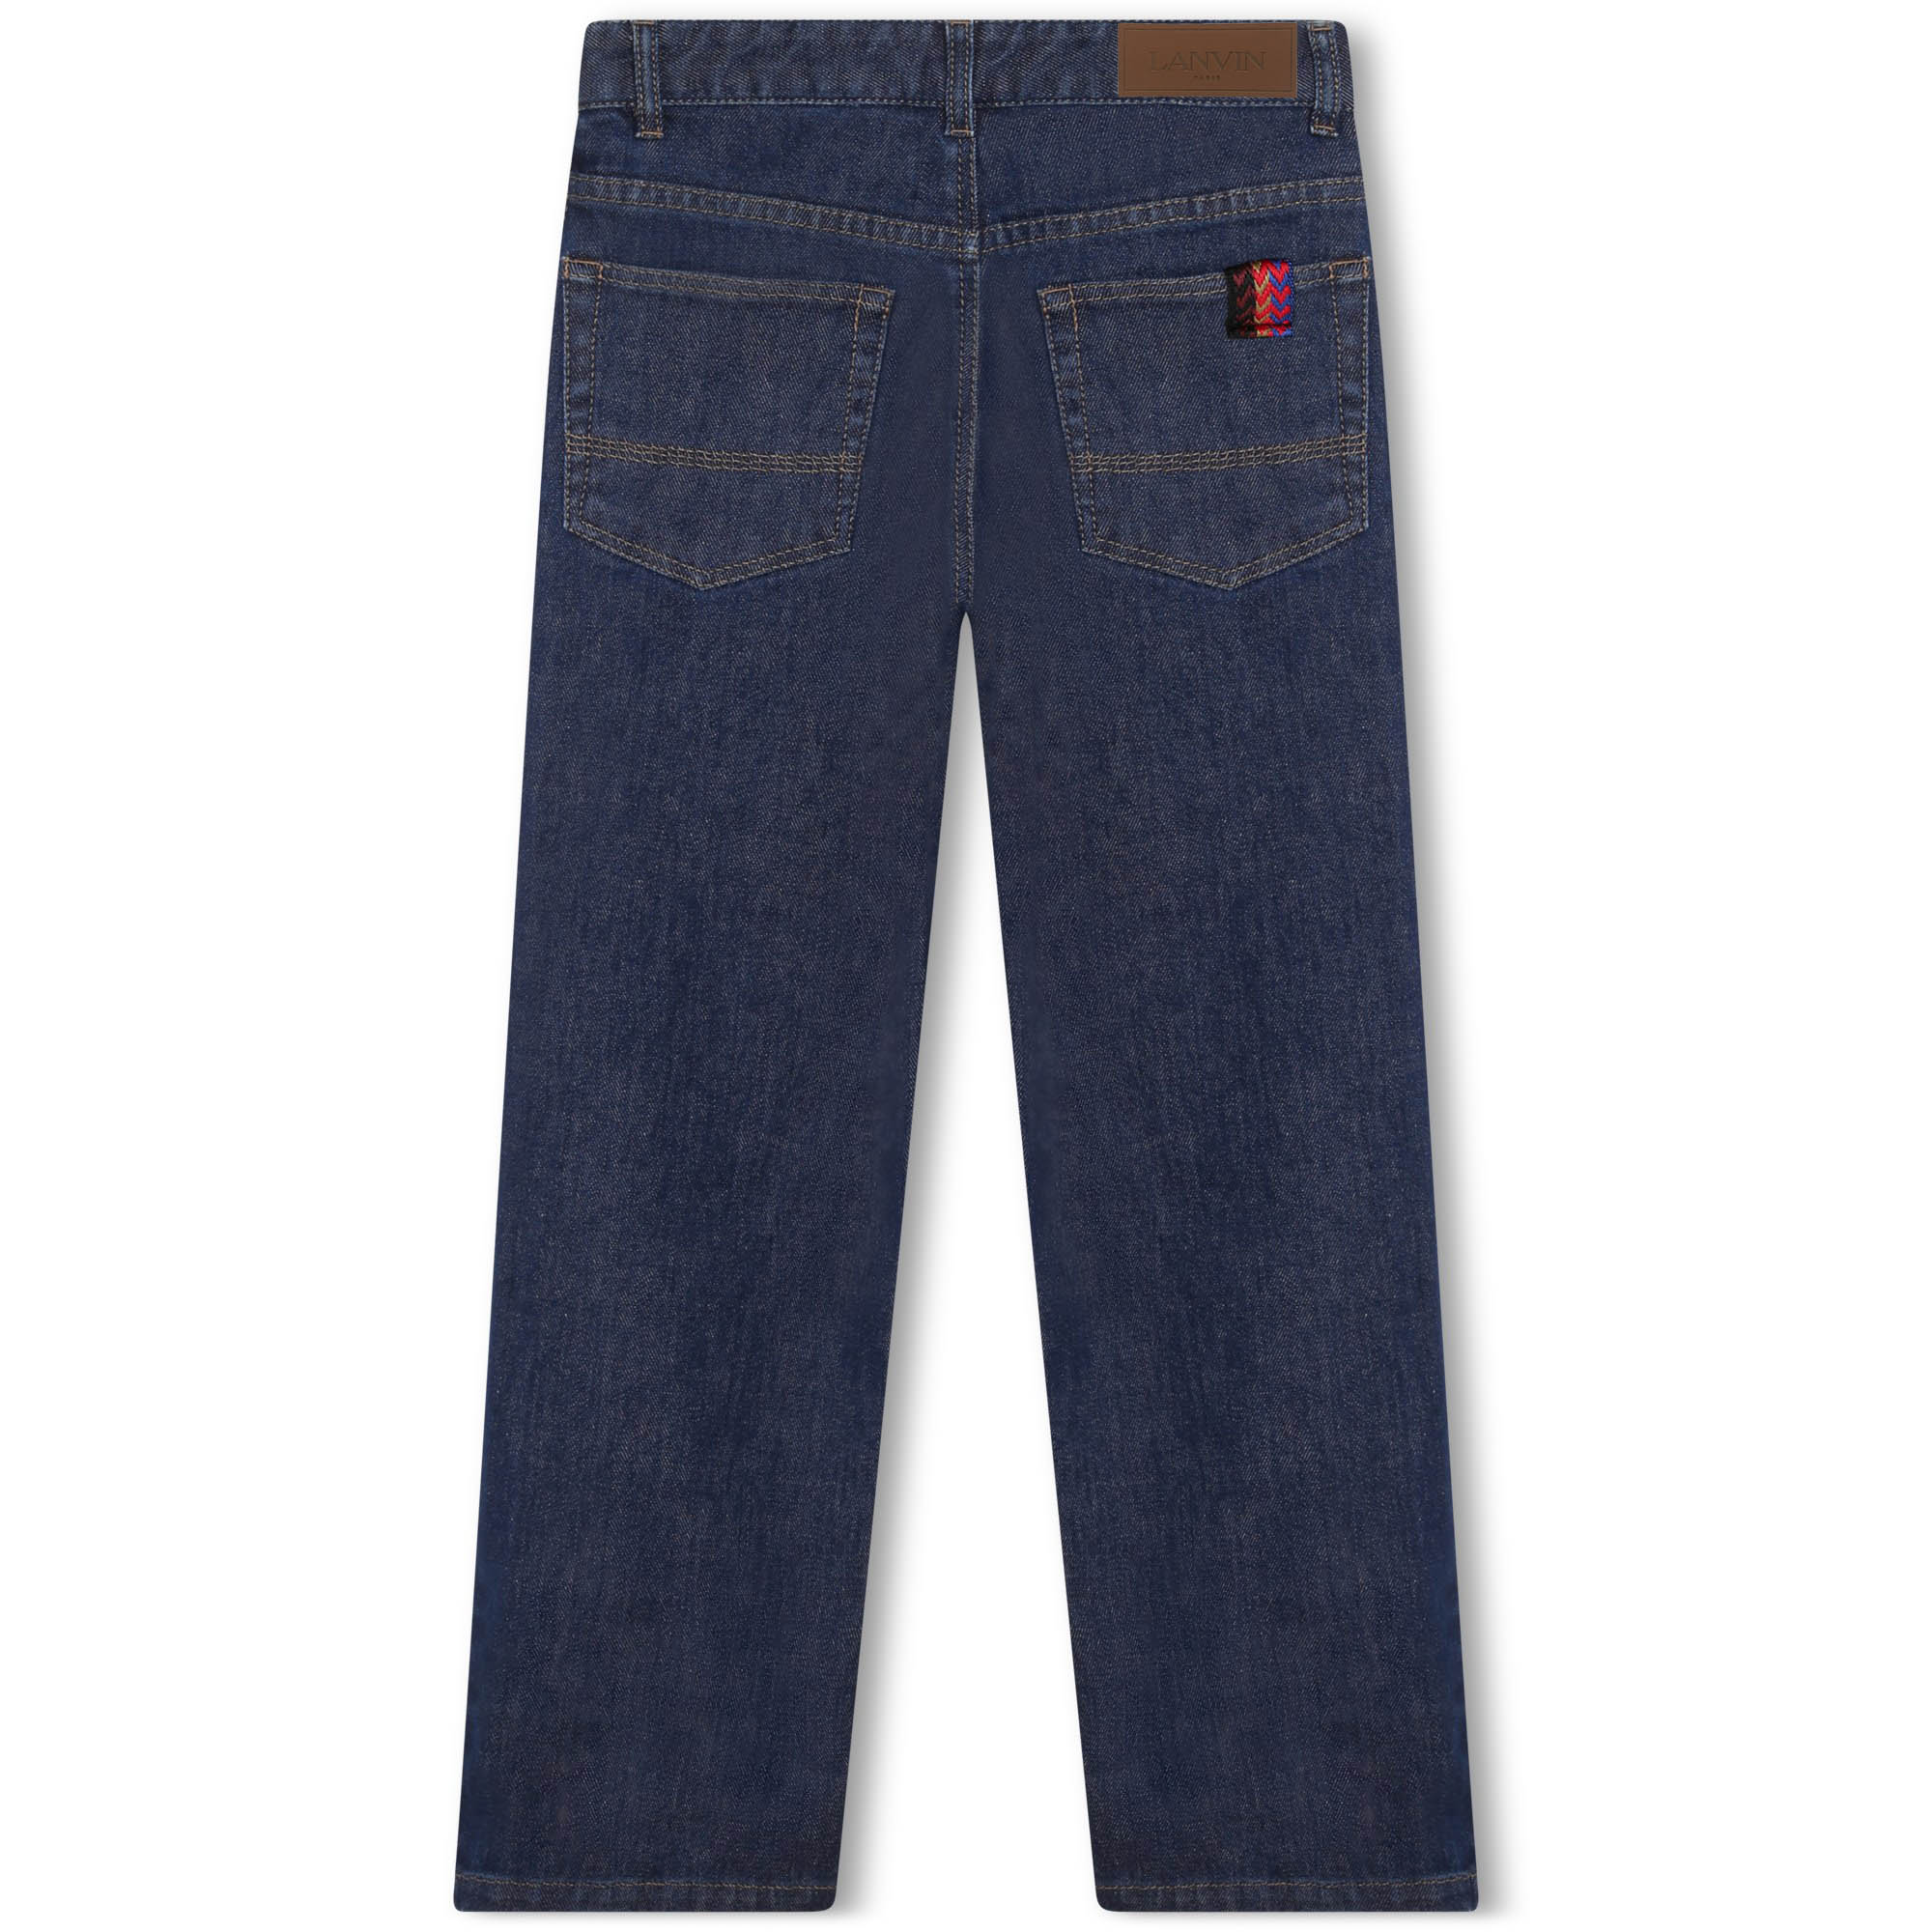 Rechte jeans met katoen LANVIN Voor